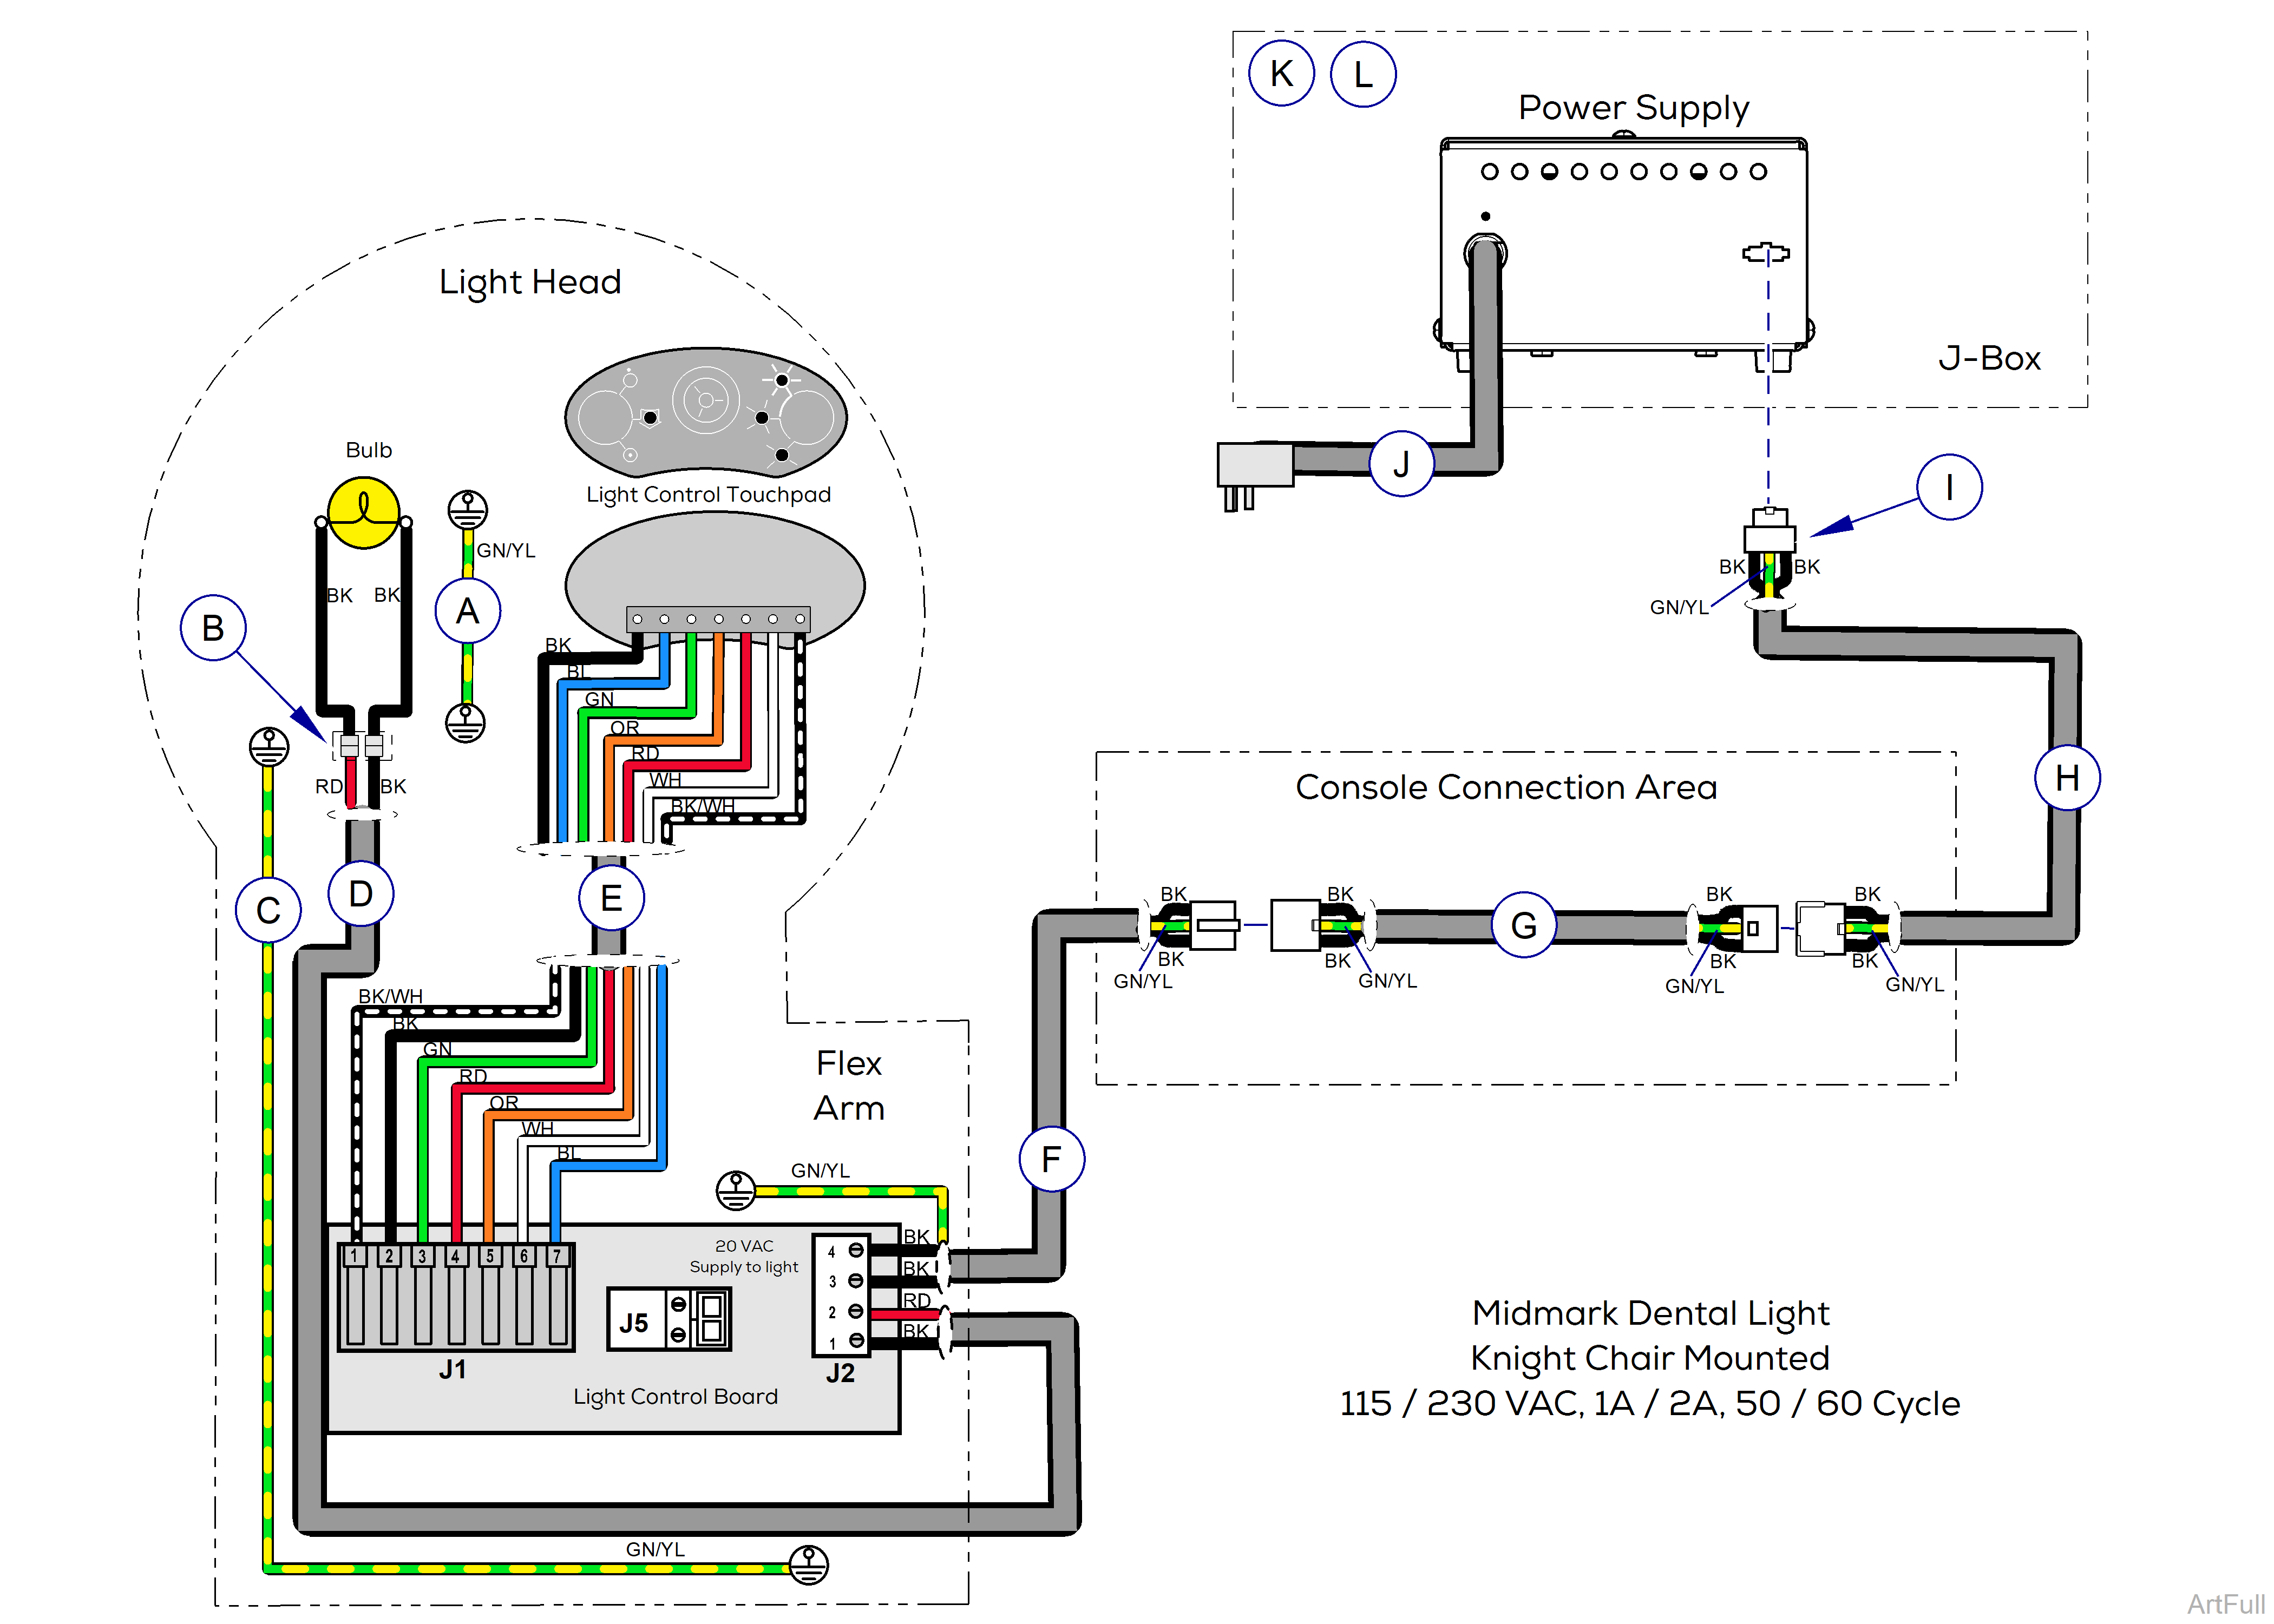 Midmark® Dental Halogen Light Wiring Diagram